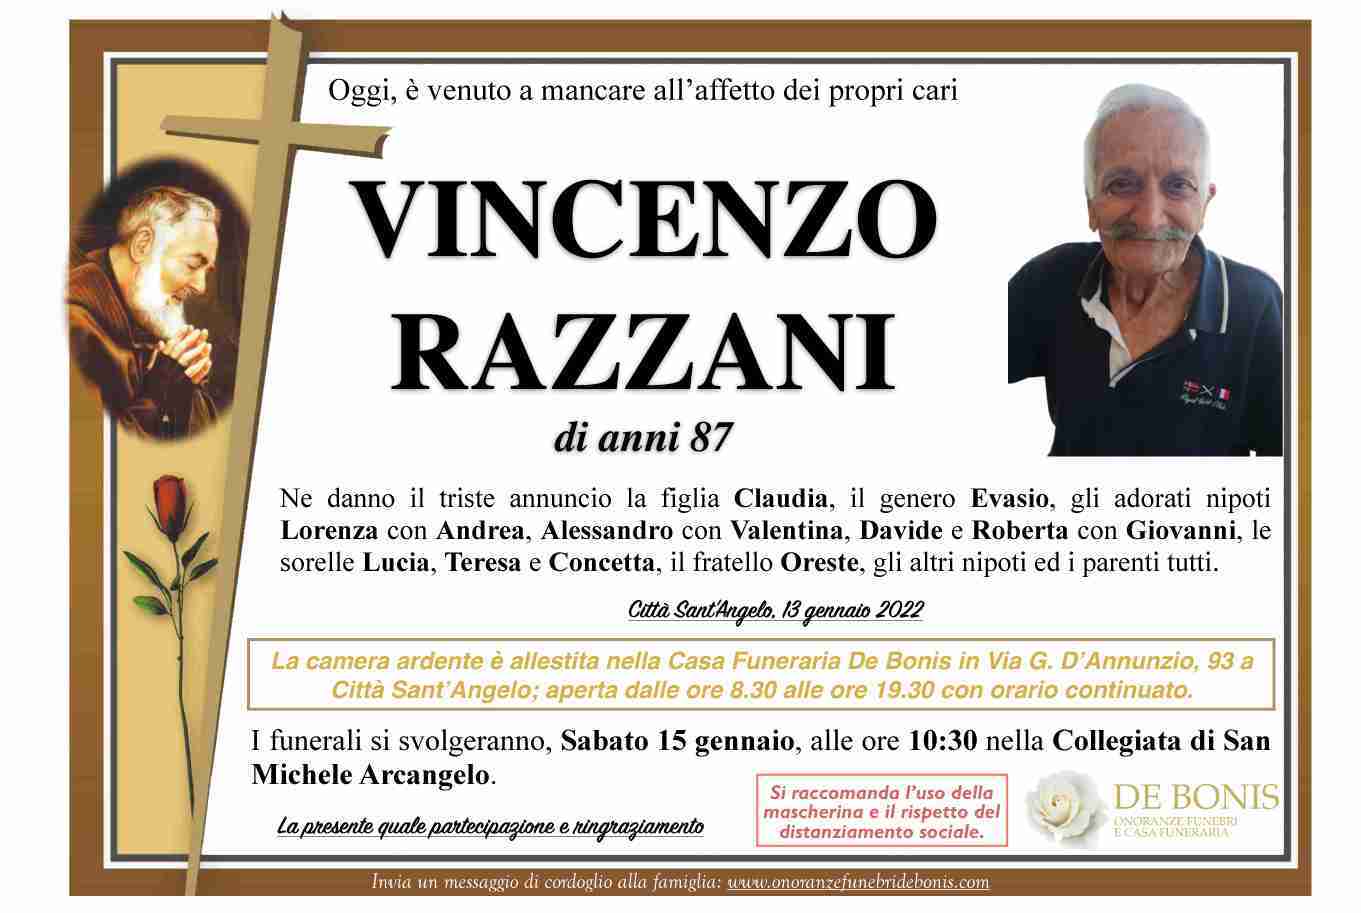 Vincenzo Razzani